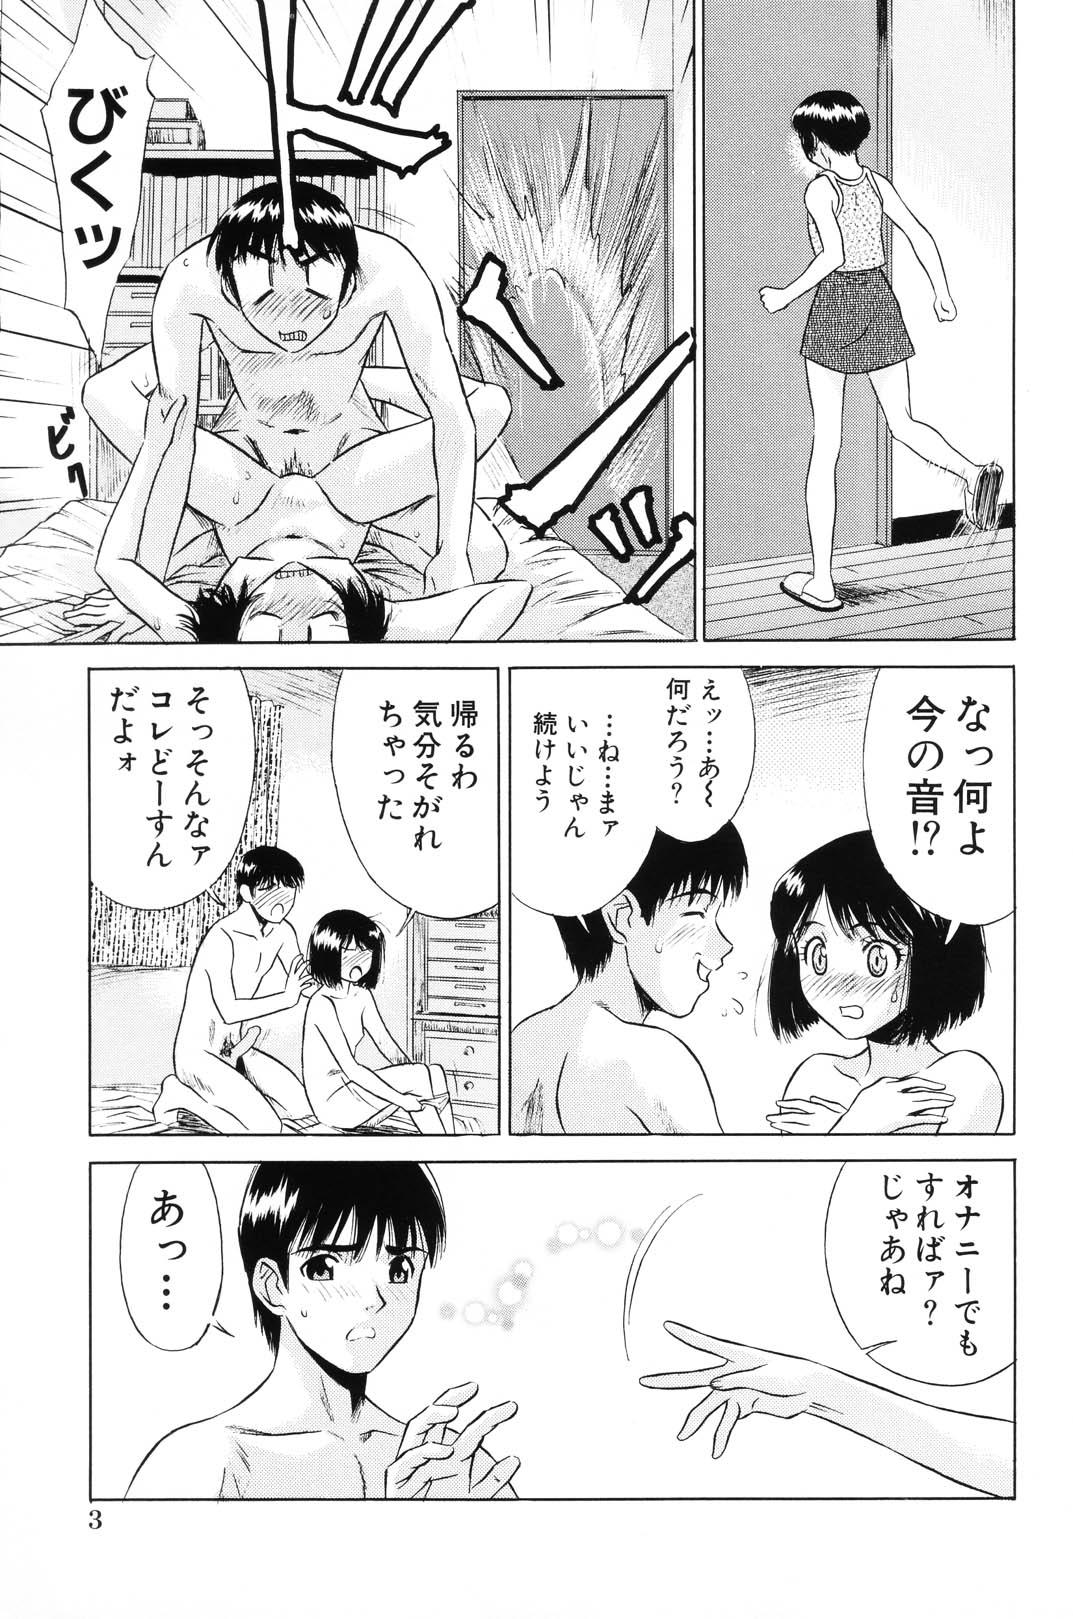 Masterbation Shoujo Kajuu 120% - The Girl Fruit Juice 120% Cartoon - Page 9